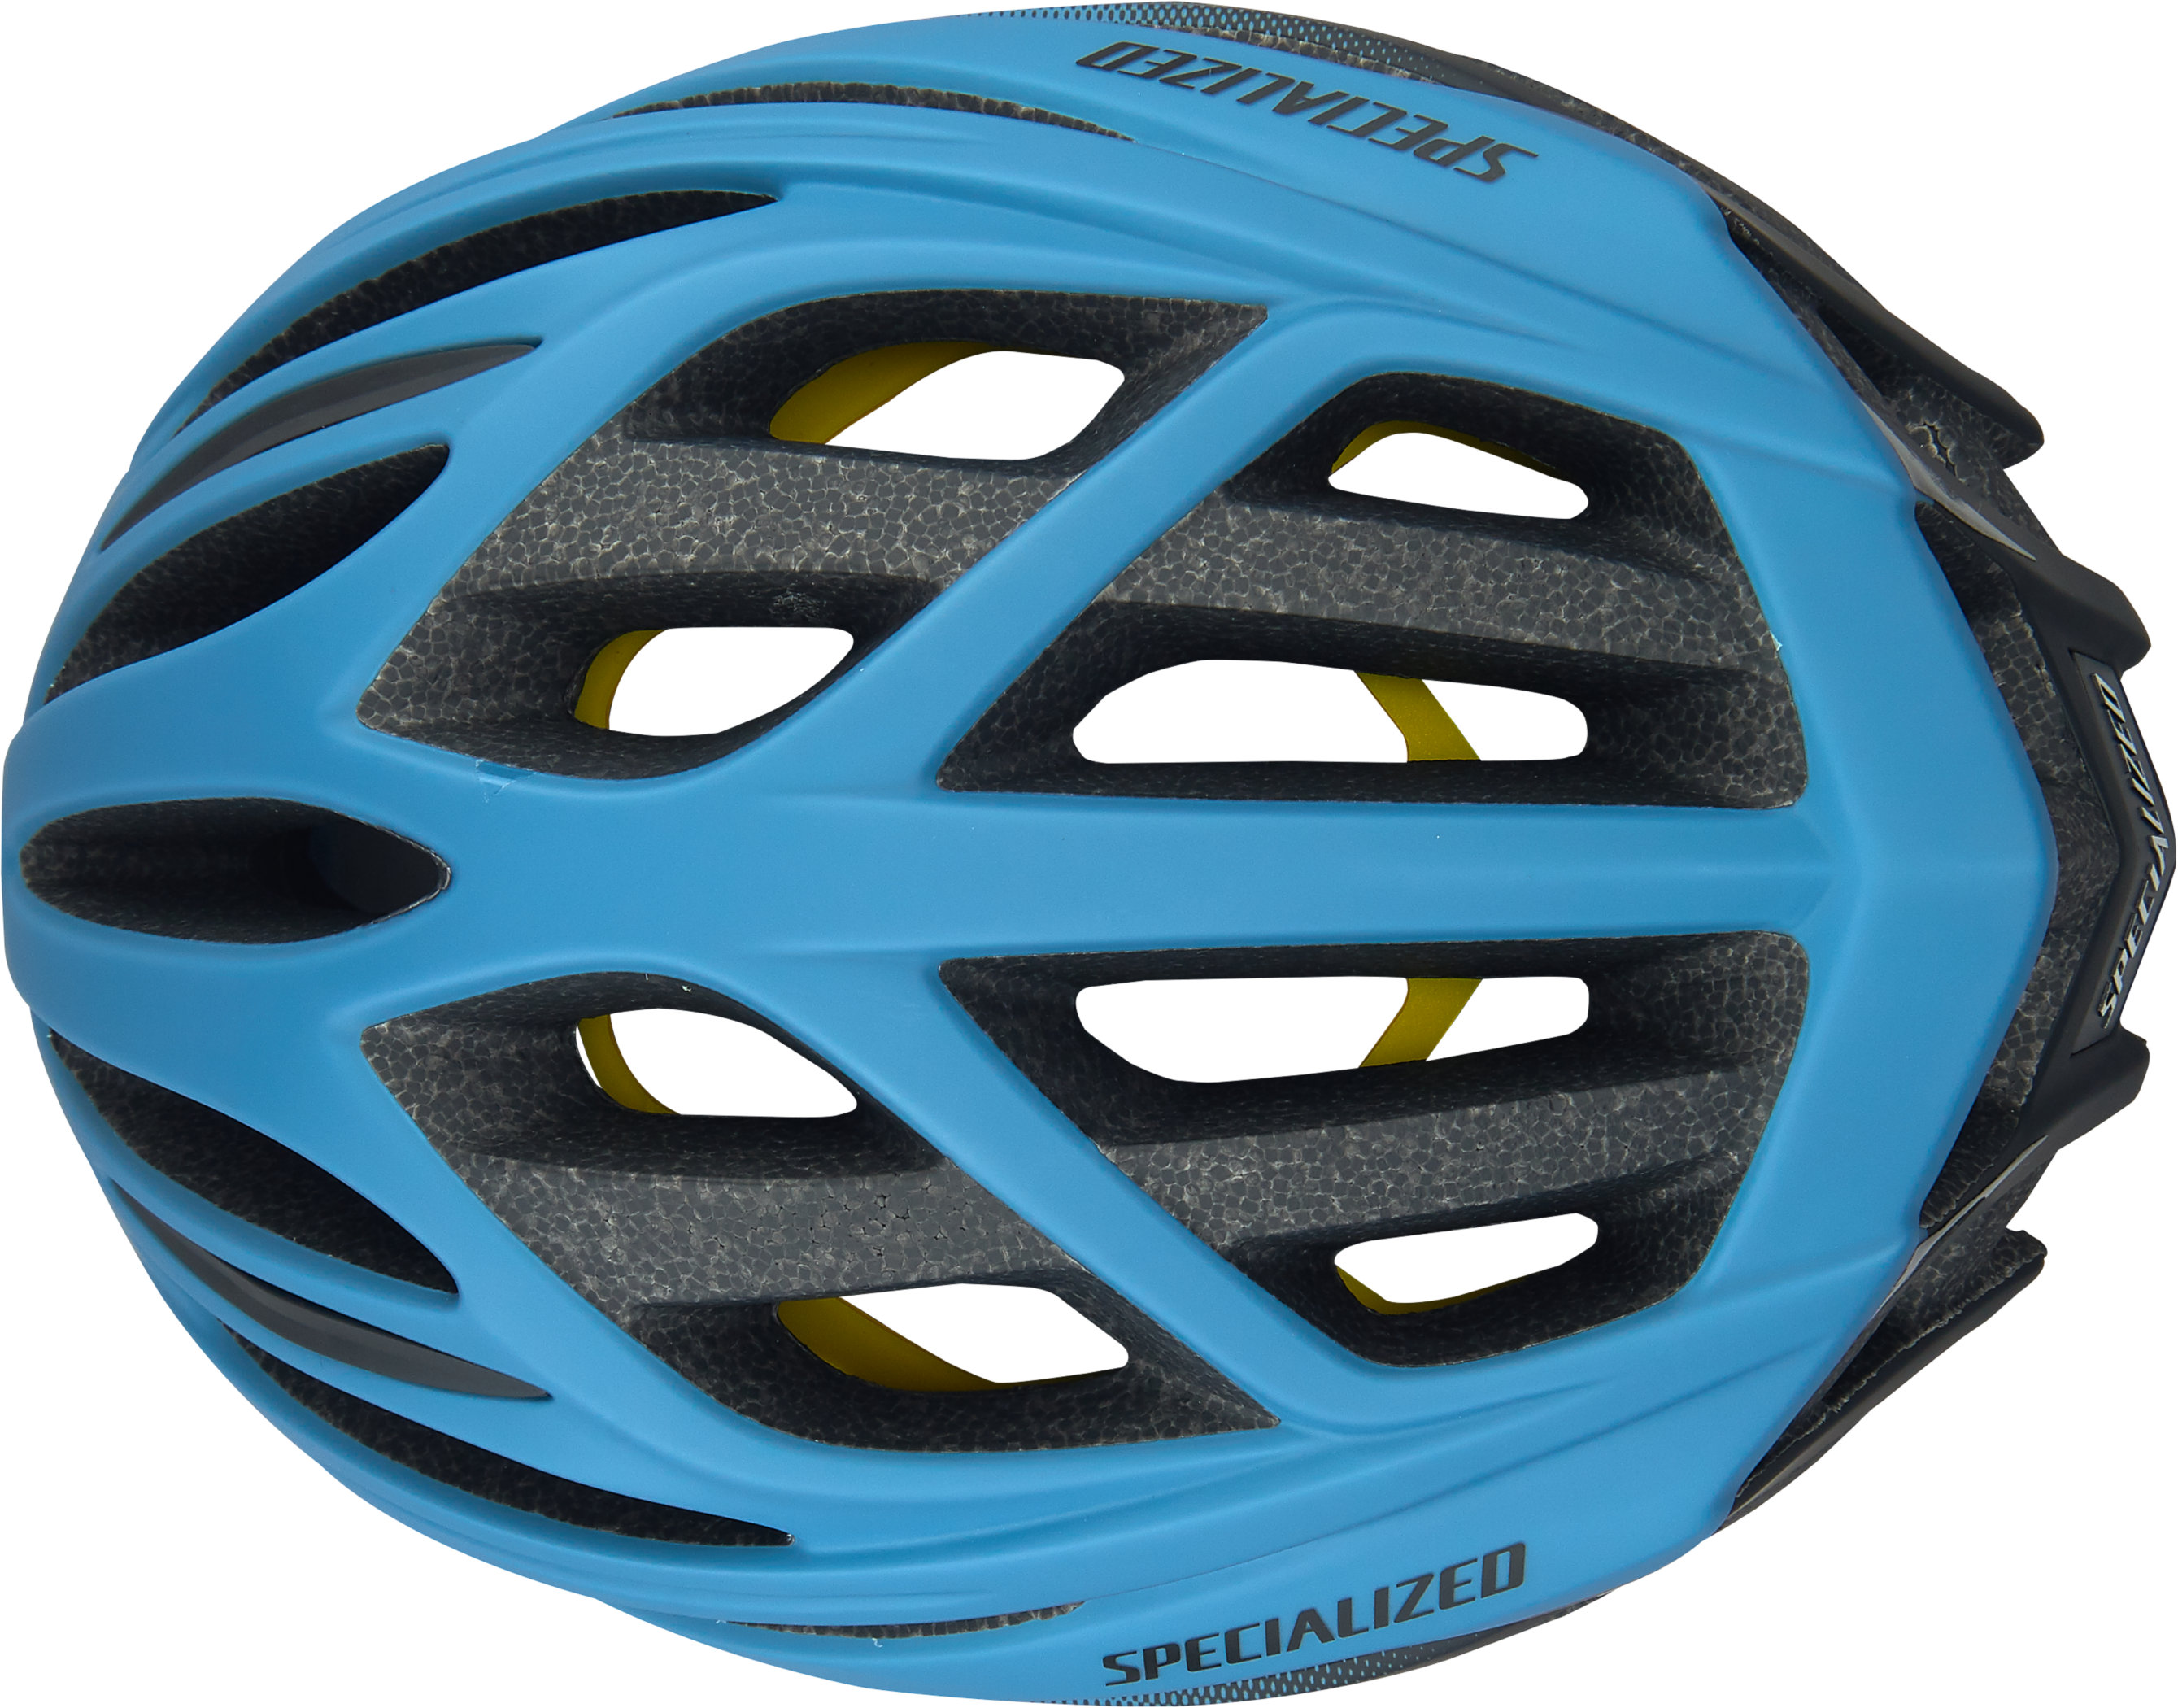 specialized echelon ii mips cycling helmet 2019